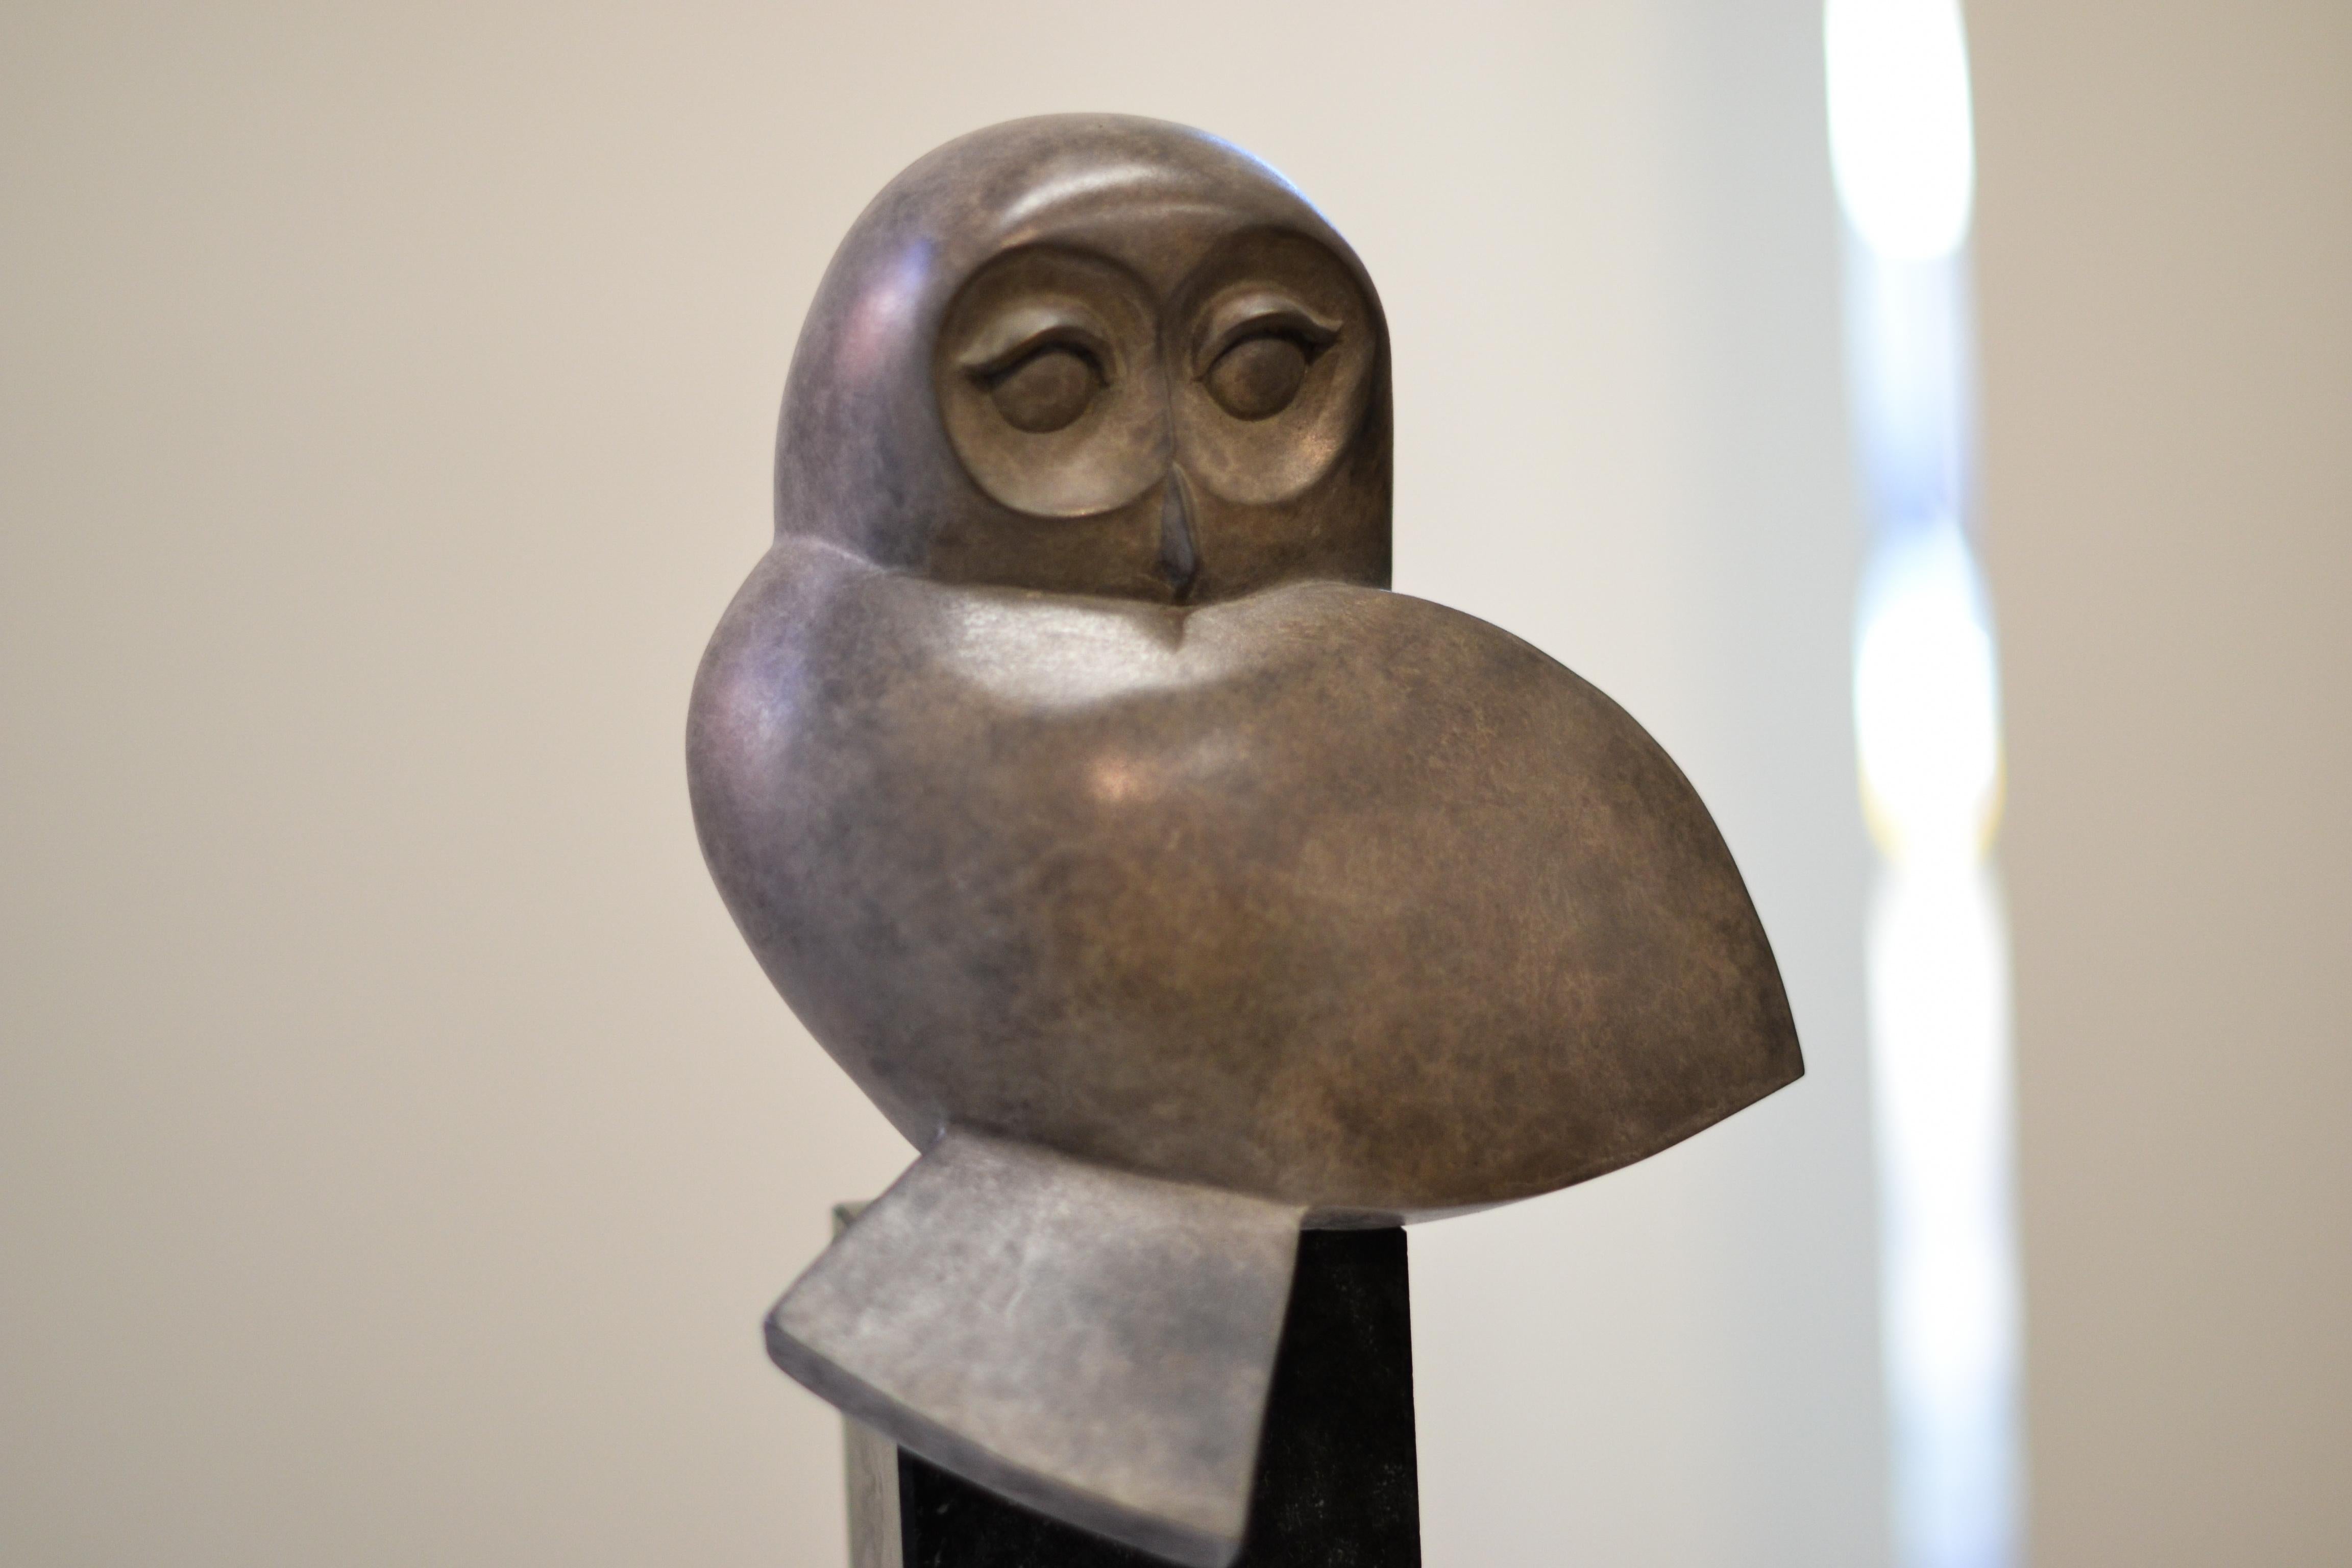 contemporary bronze sculpture artists